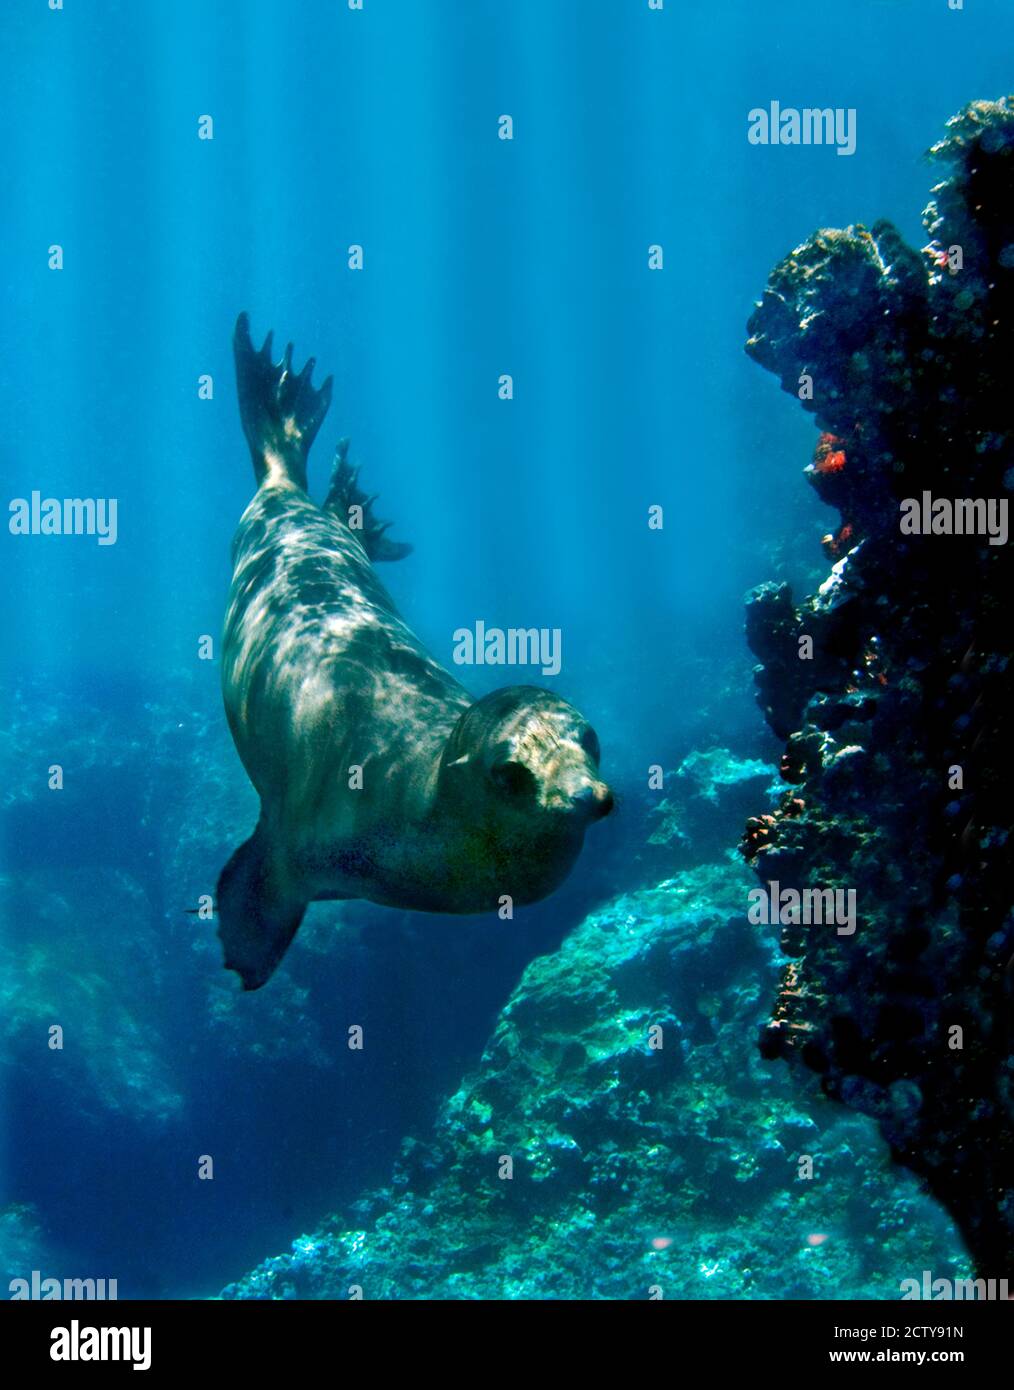 Le lion de mer de Galapagos (Zalophus wollebaeki) nageant sous l'eau, îles Galapagos, Équateur Banque D'Images